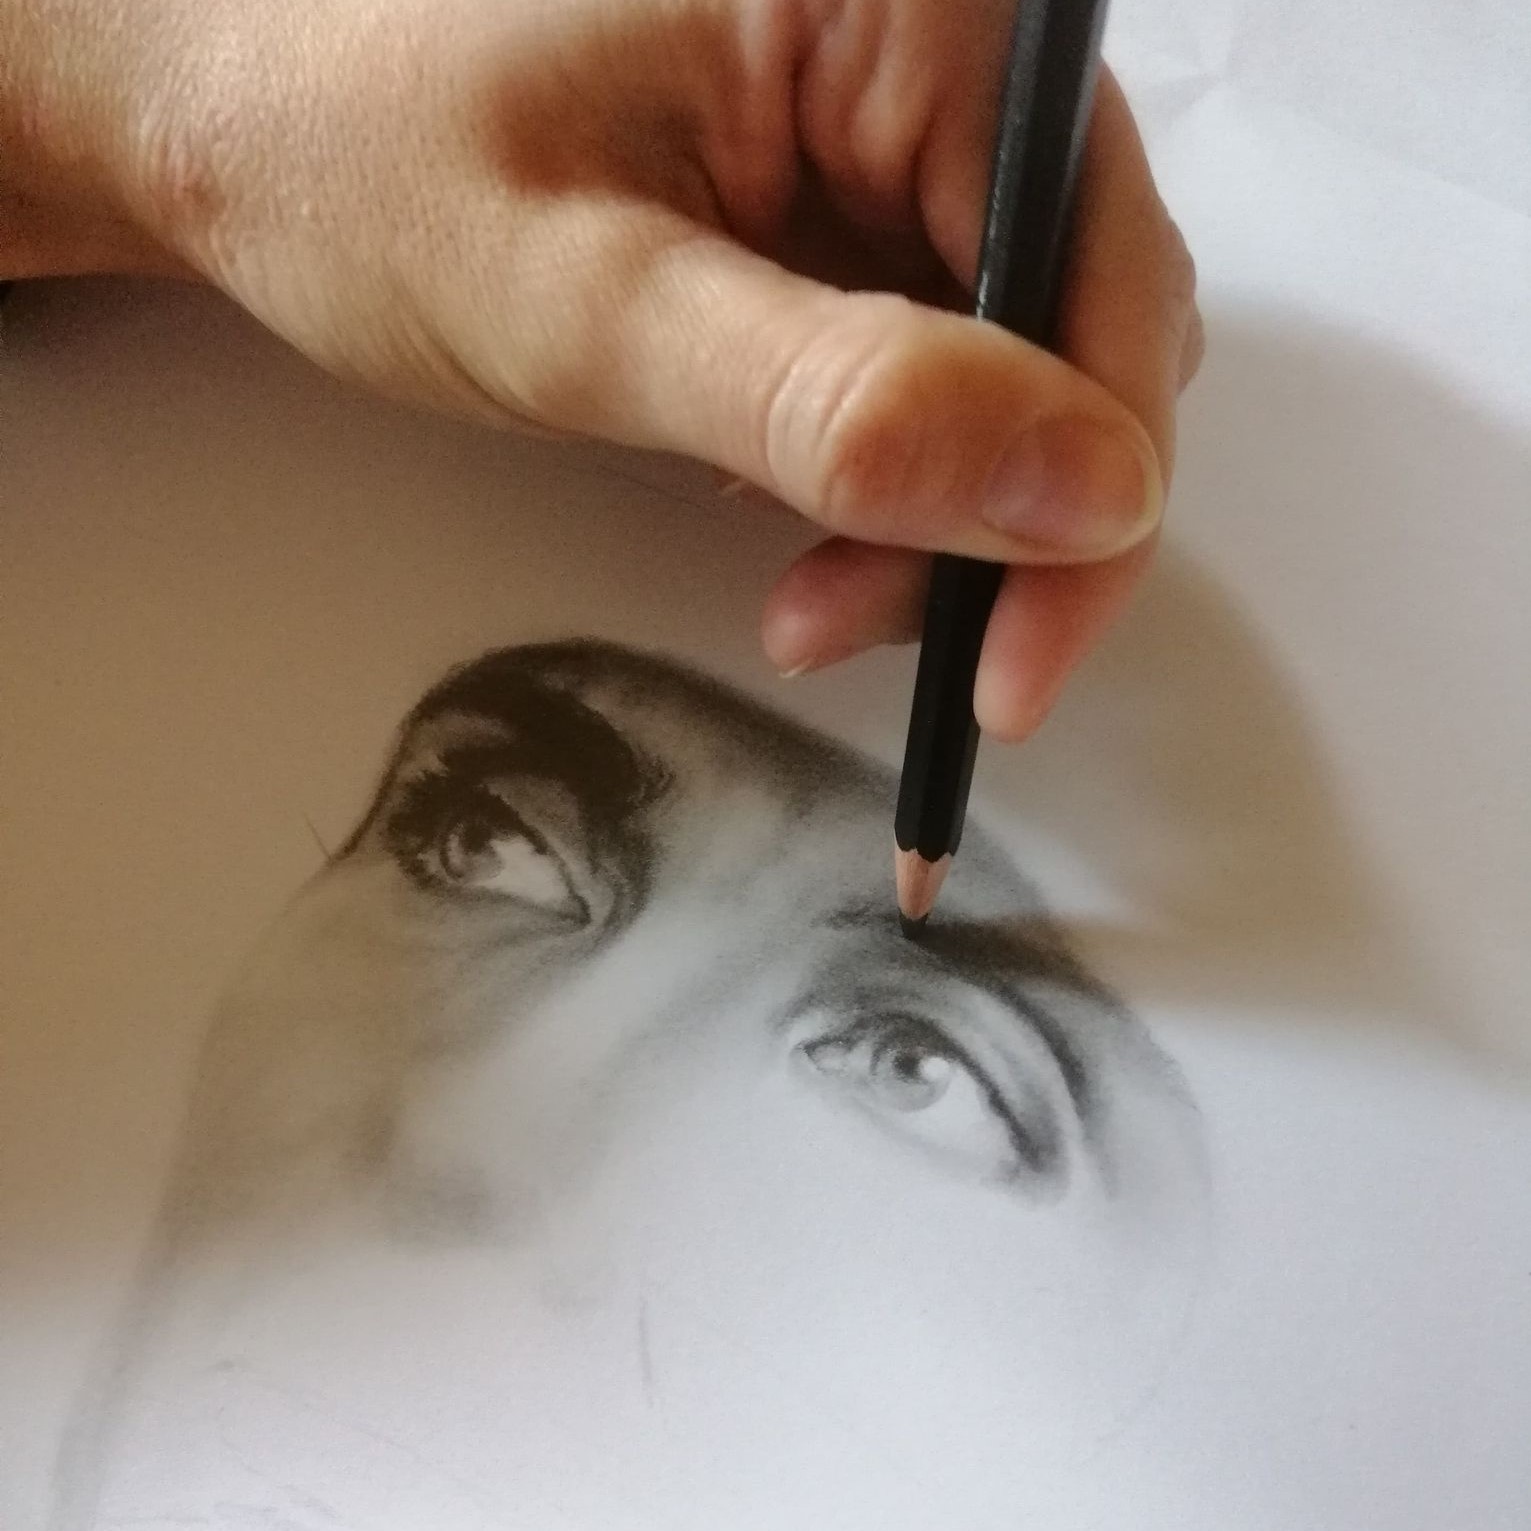 Hånd med blyant som tegner et ansikt.